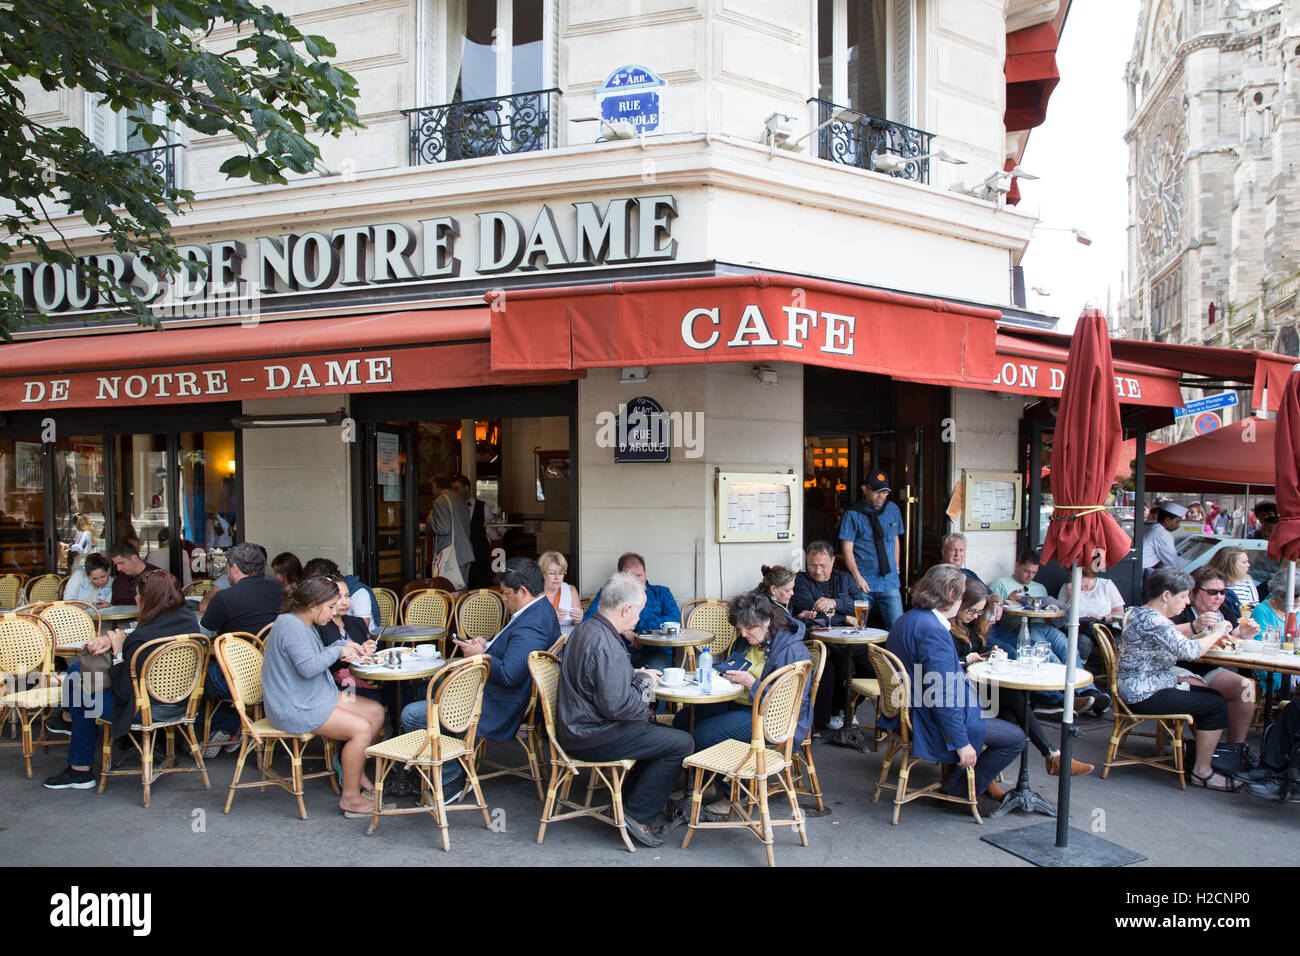 Aux Tours De Notre Dame, cafe/restaurant in Paris, France Stock Photo